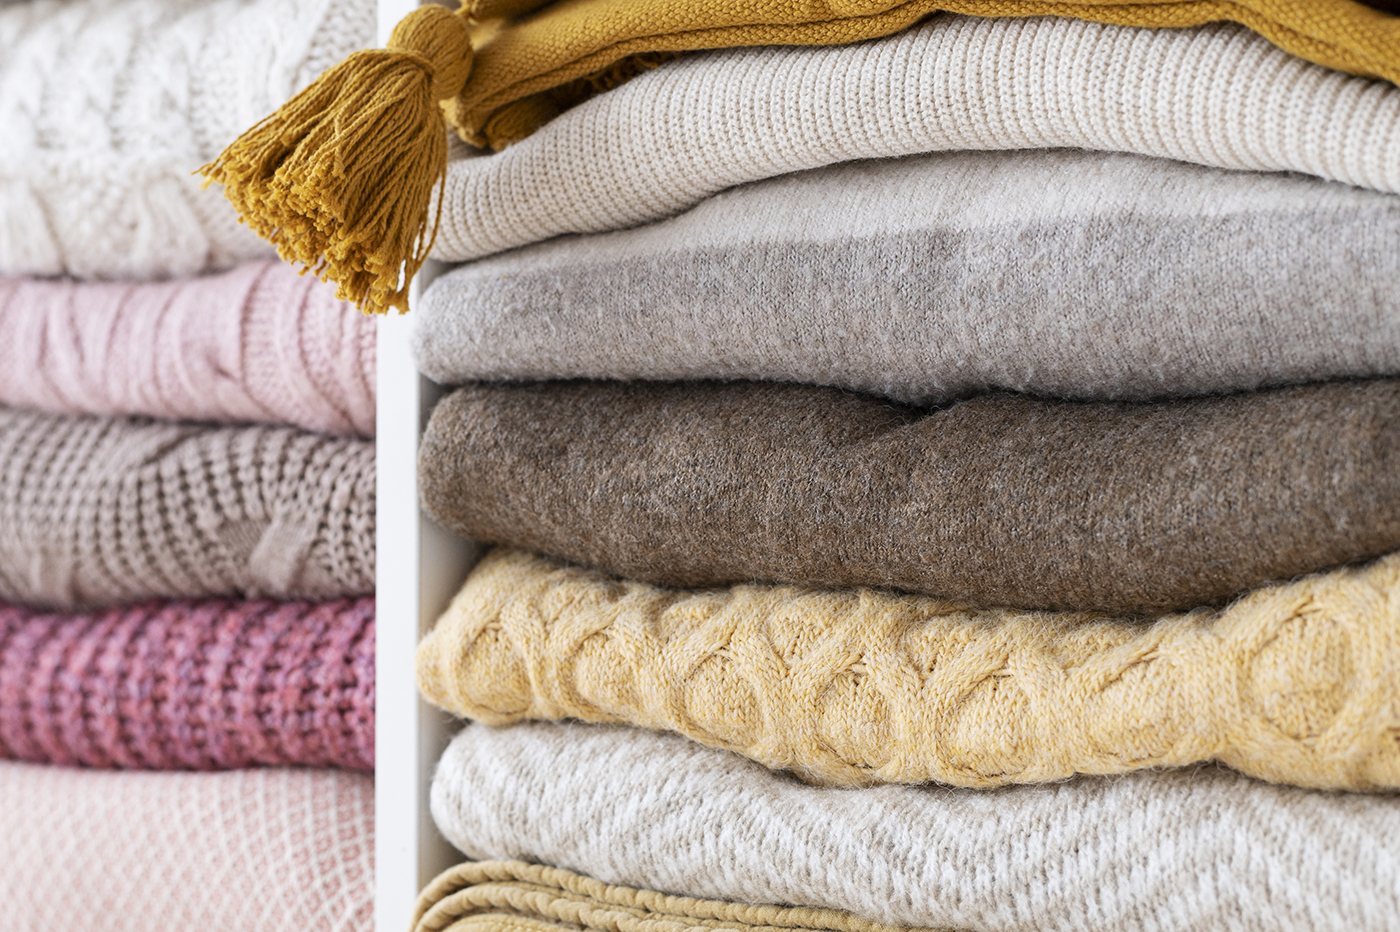 Hãy lựa chọn áo len làm từ các loại sợi tự nhiên. Dù việc giặt giũ và bảo quản những chiếc áo này đòi hỏi nhiều công sức hơn, nhưng chúng sẽ đồng hành cùng bạn trong thời gian dài. (Ảnh: mama_mia/Shutterstock, Freepik)